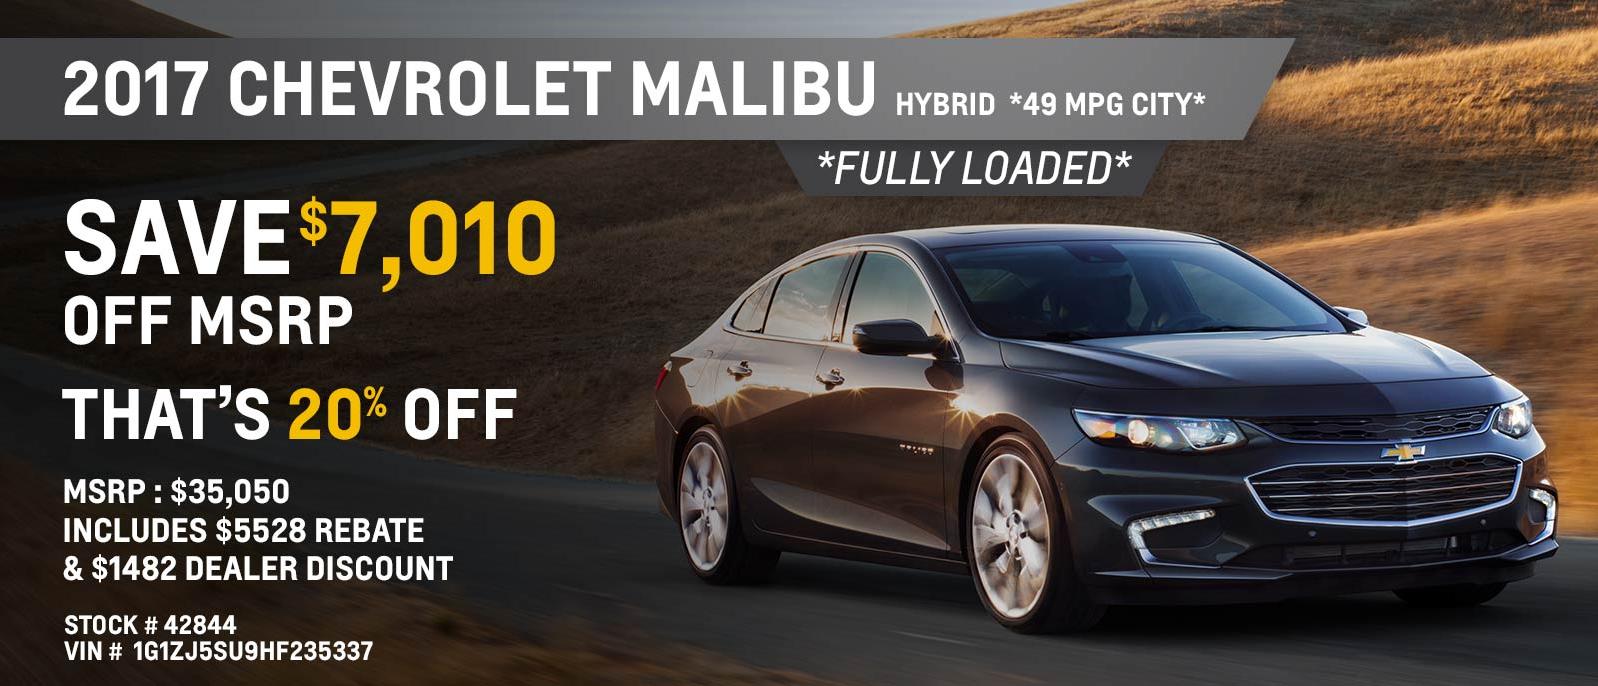 Malibu - May offer